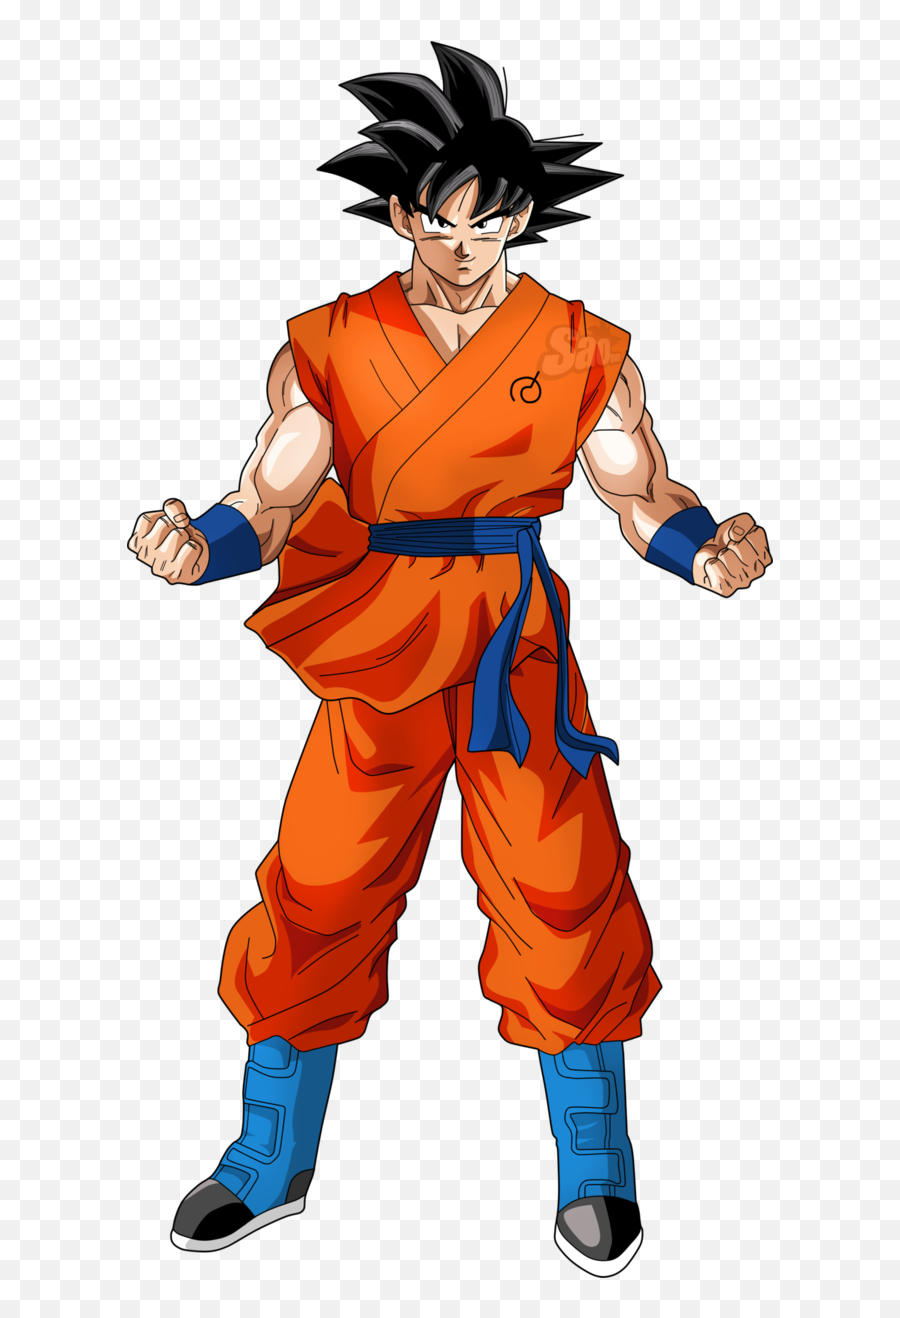 Goku Image - Goku Dragon Ball Súper Emoji,Goku Png